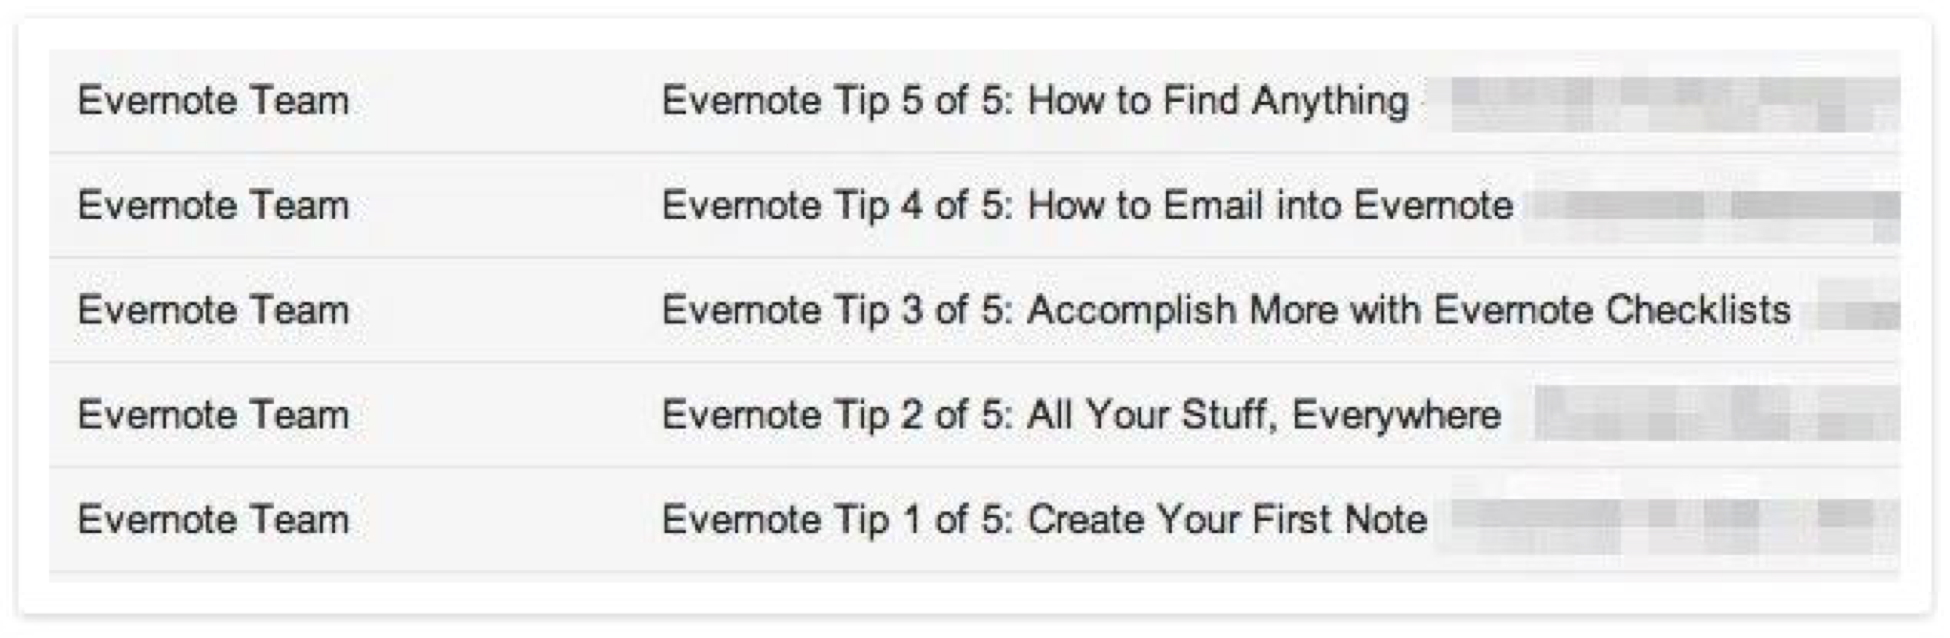 Пример информационной рассылки Evernote